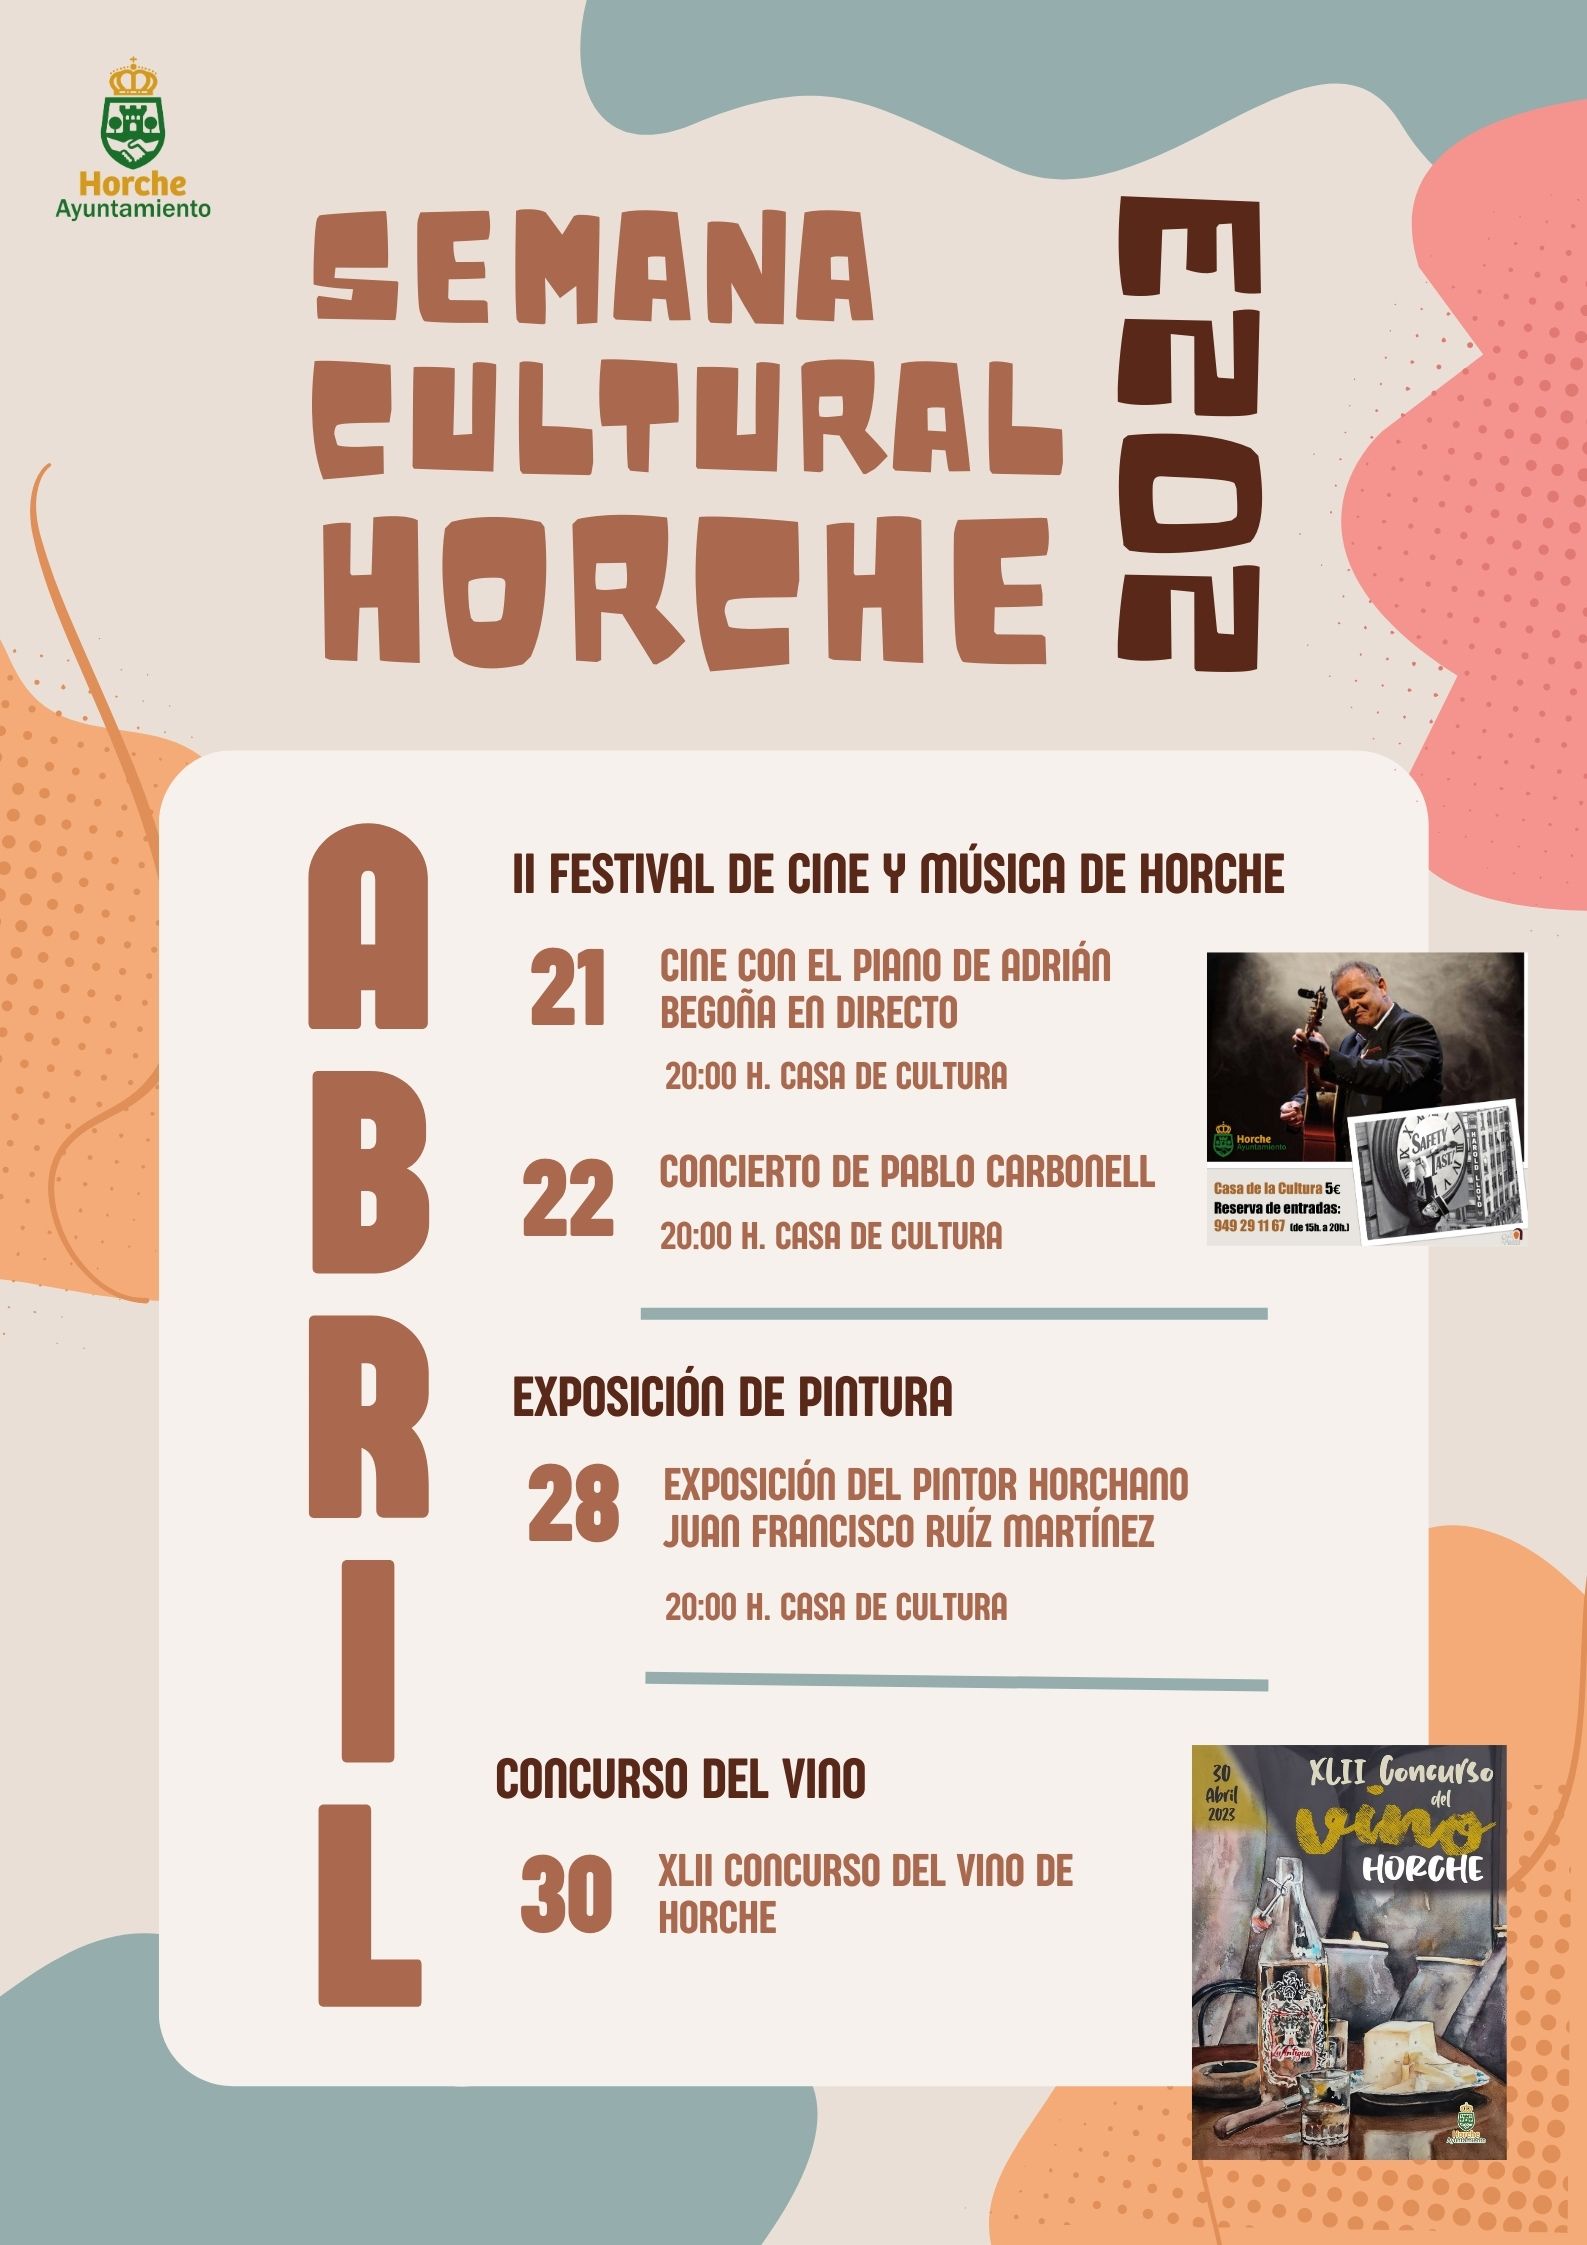 Llega la Semana Cultural de Horche con música, cine, pintura y mucho vino